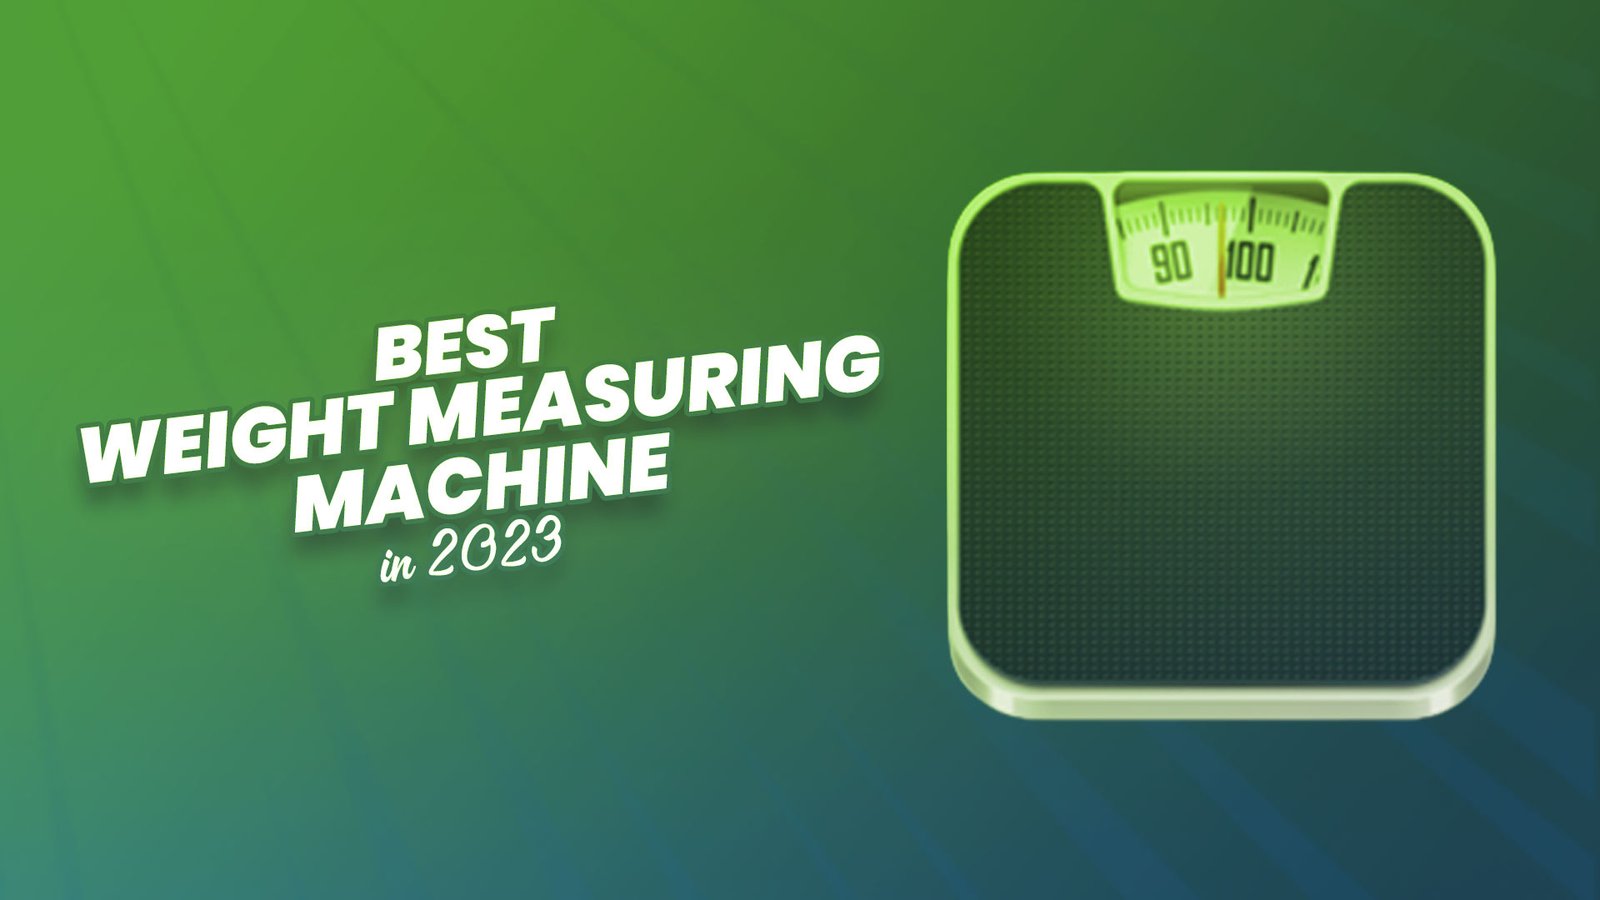 Best Weight Measuring Machine in 2023